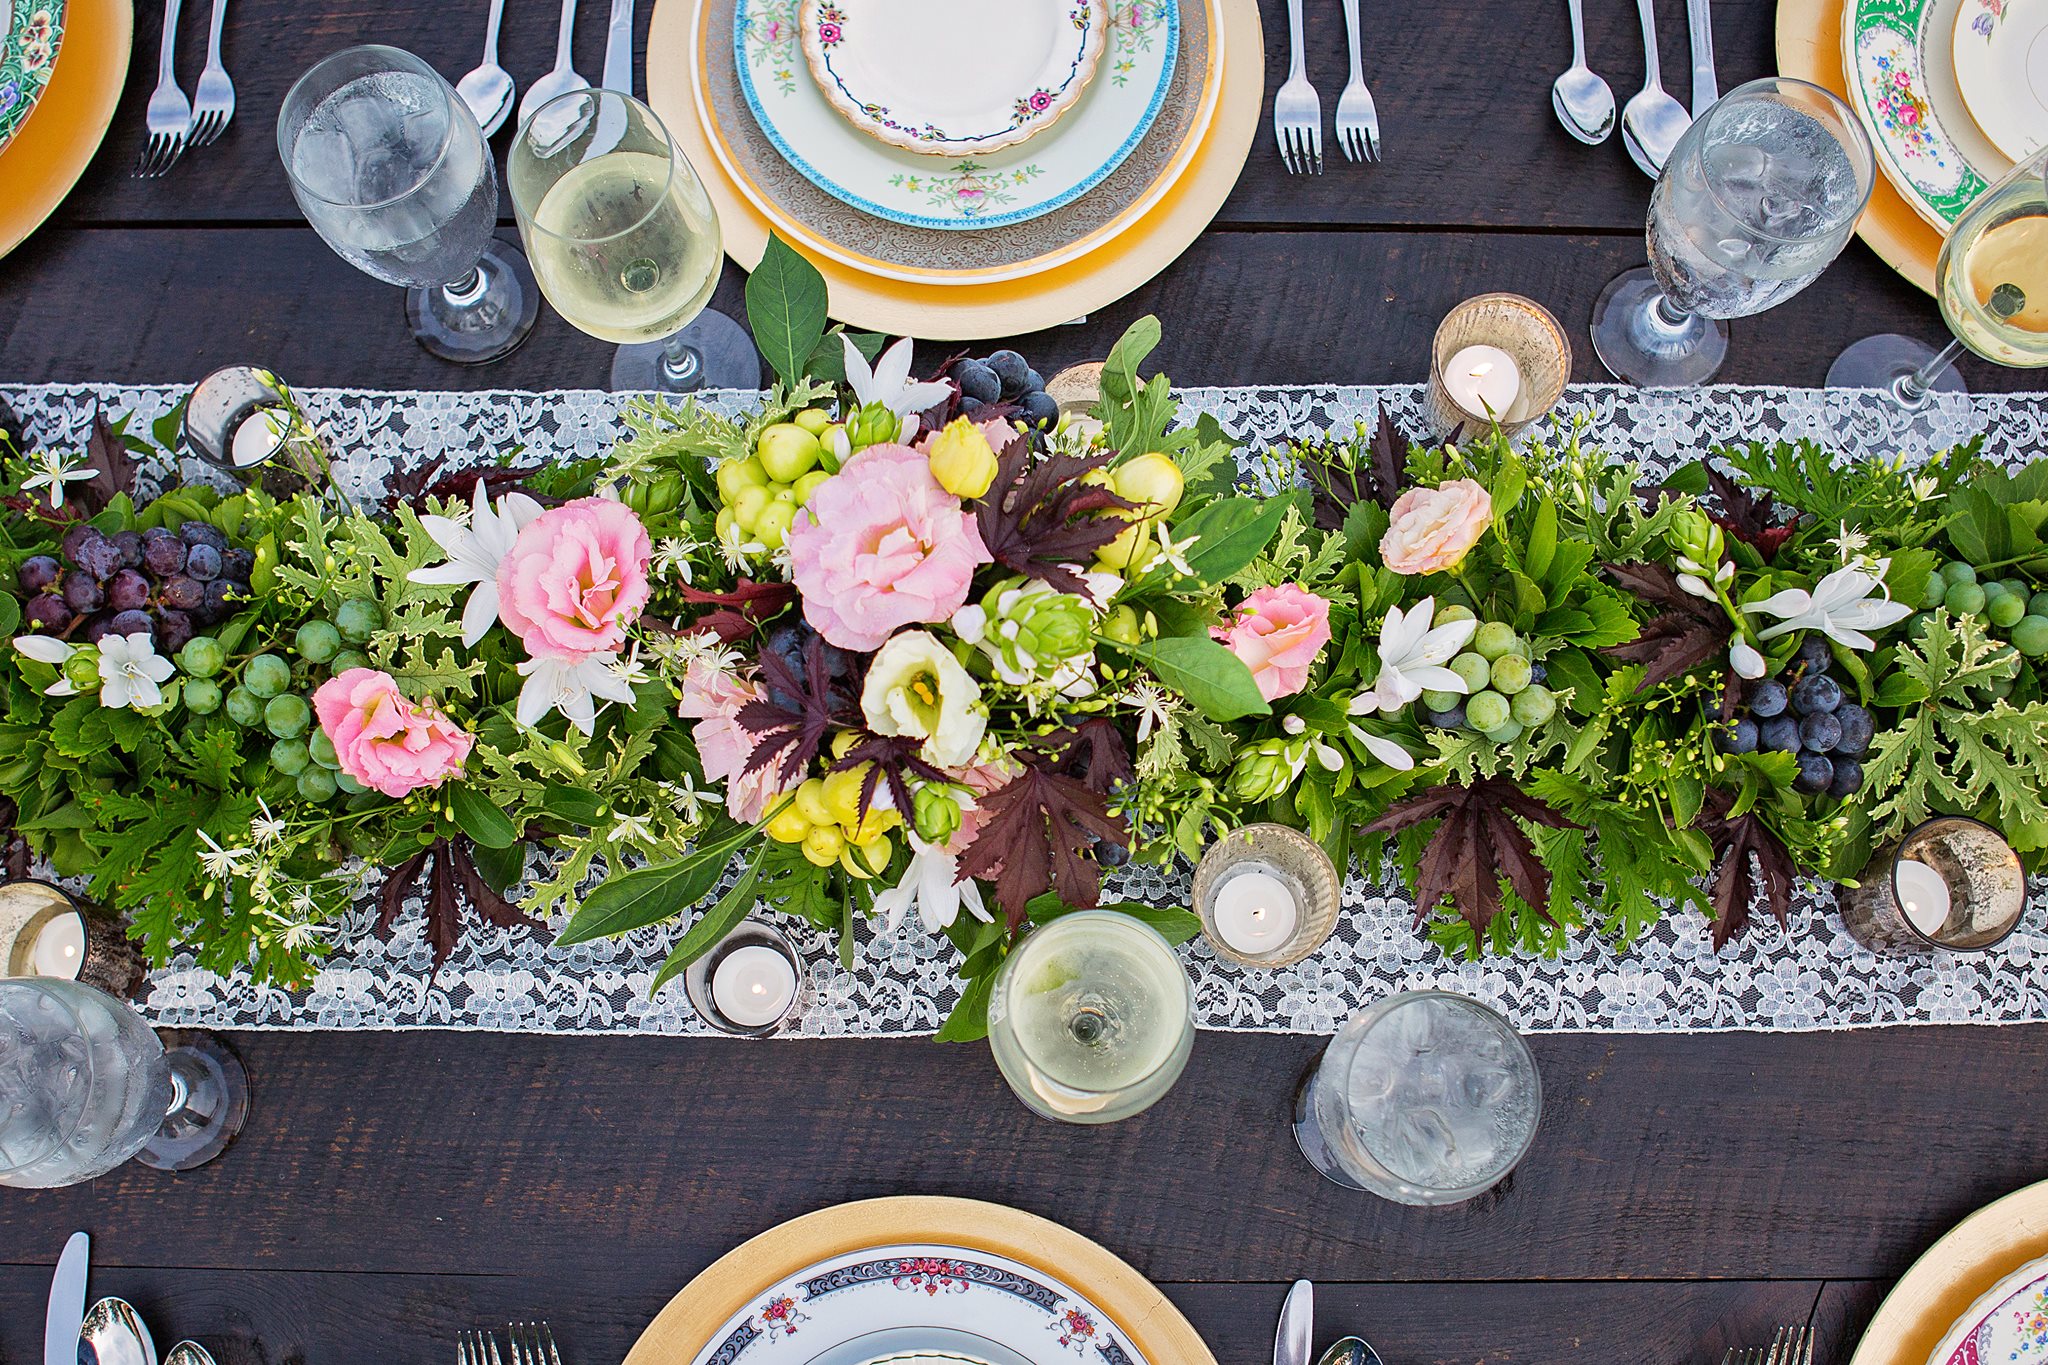 set table with flower arrangement centerpiece